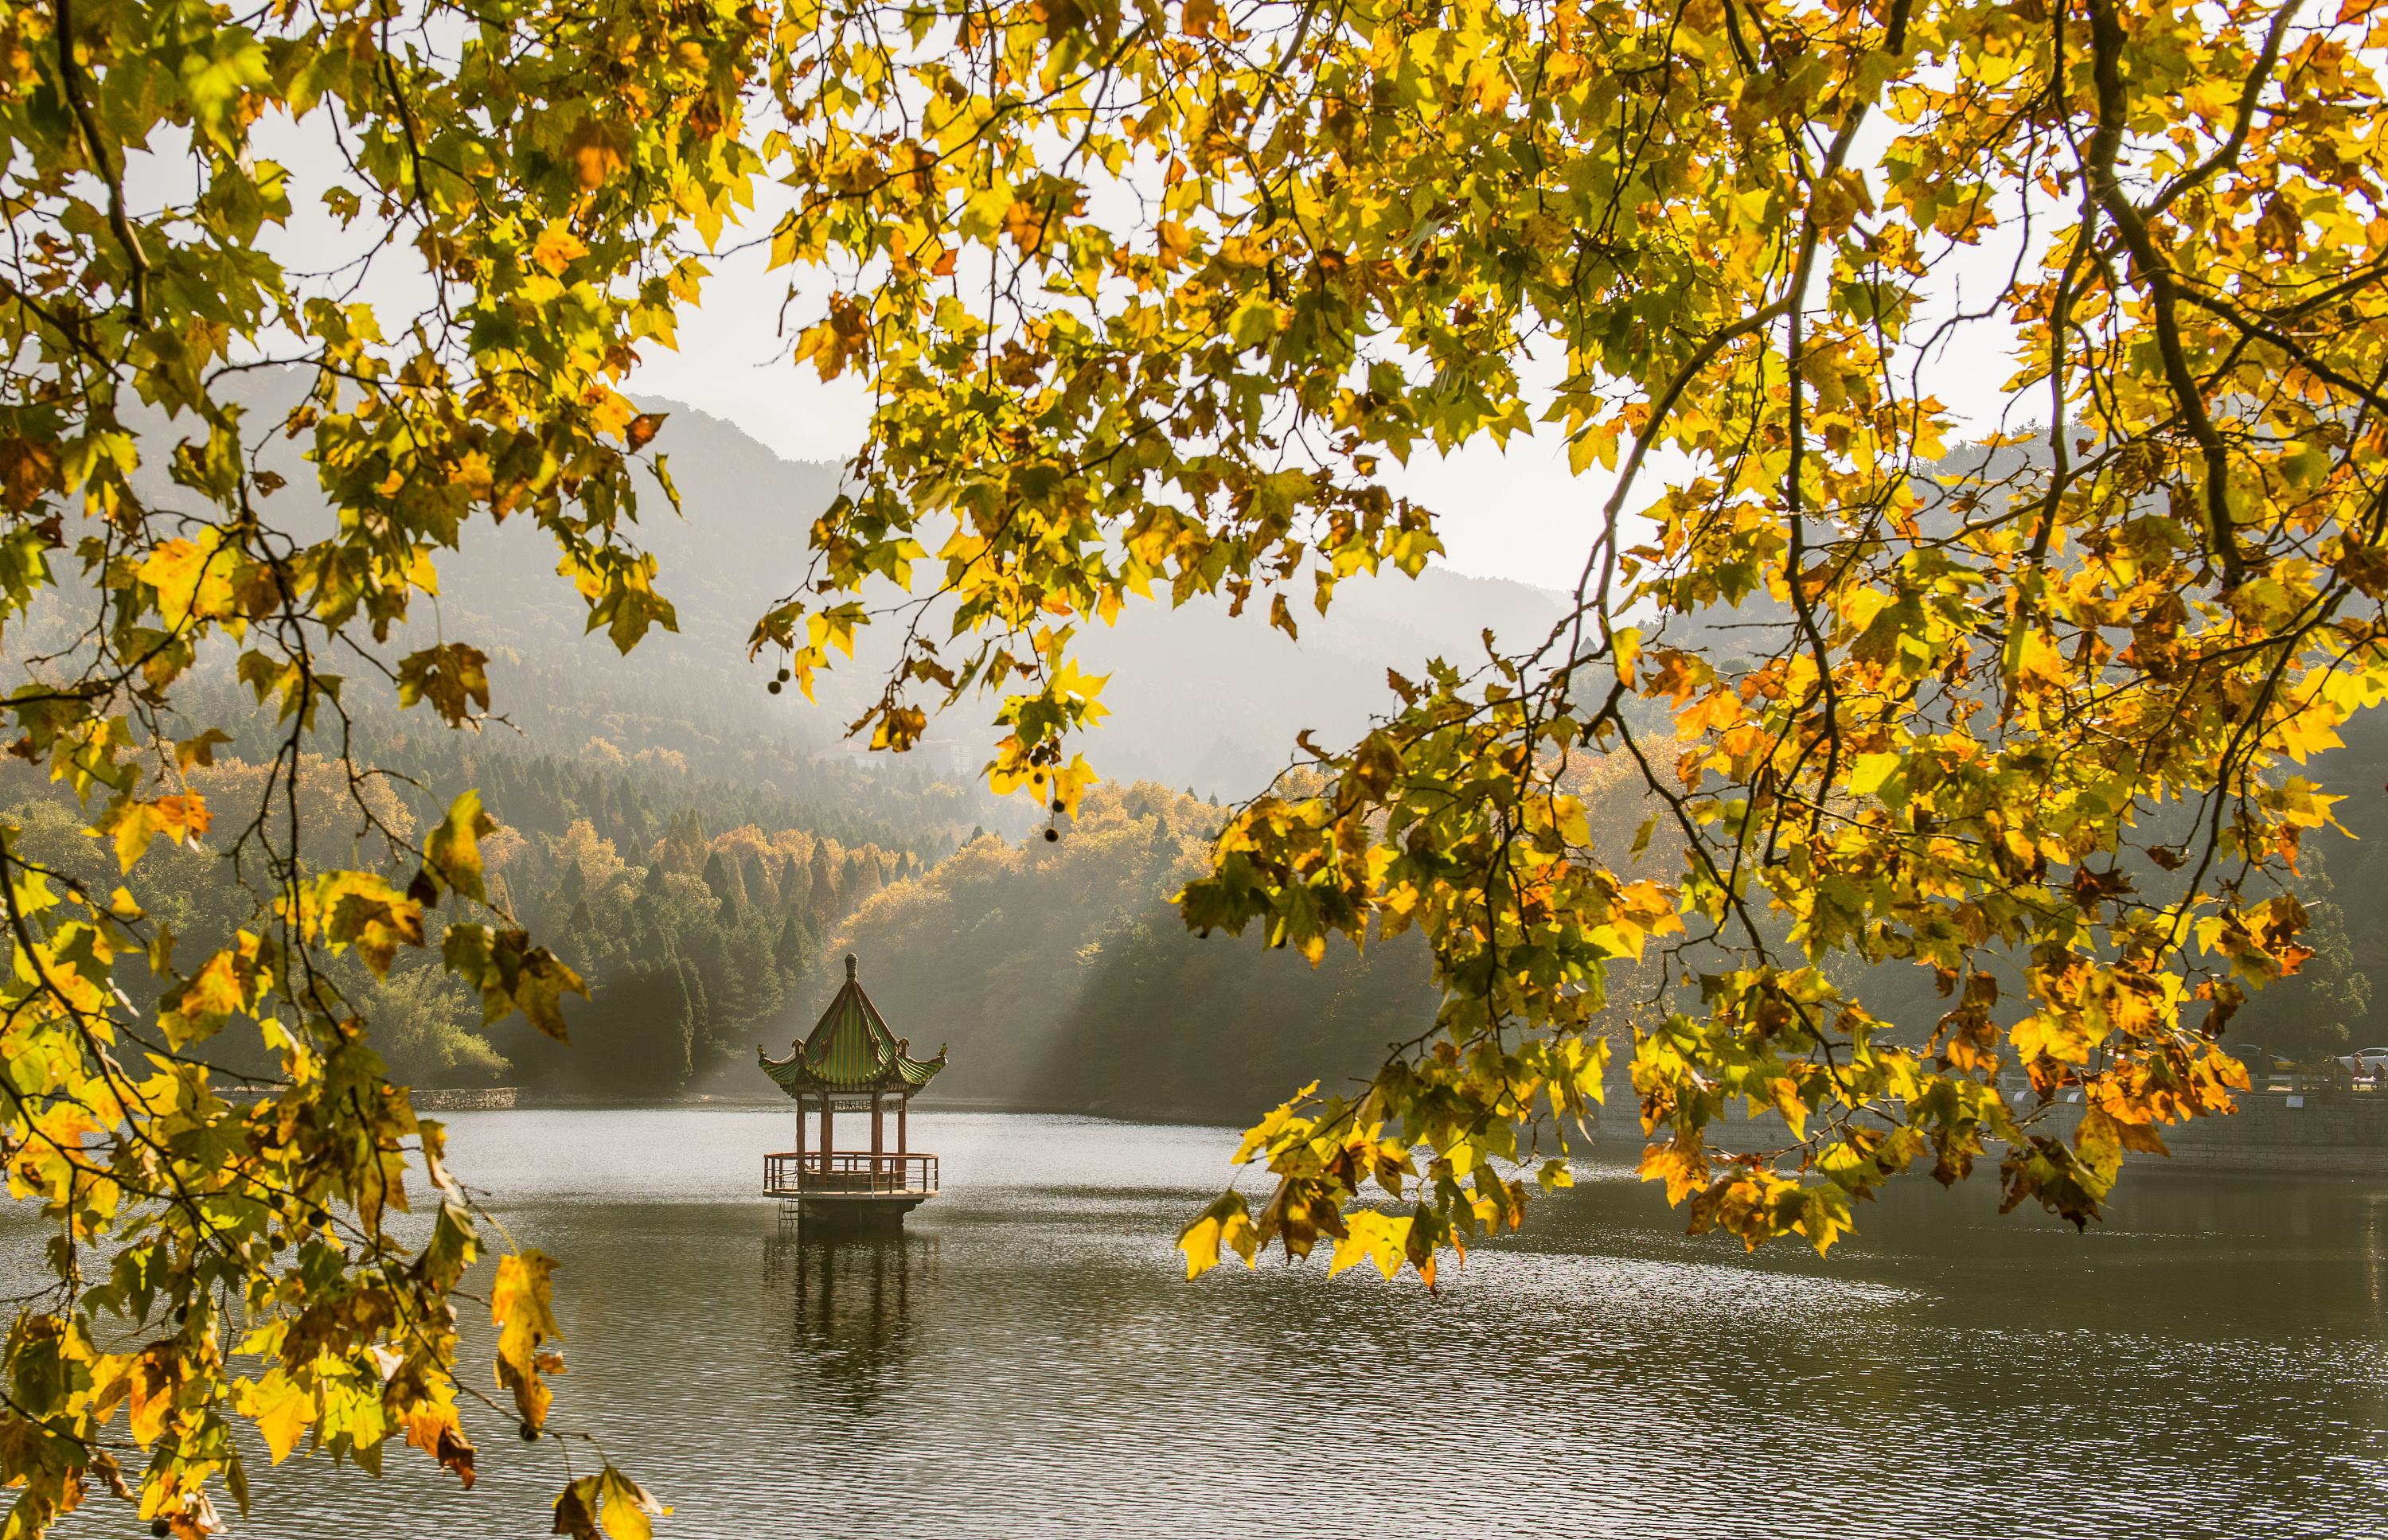 入秋后想看世界级的秋色秋色的婺源庐山黄山的枫叶都美无法言喻